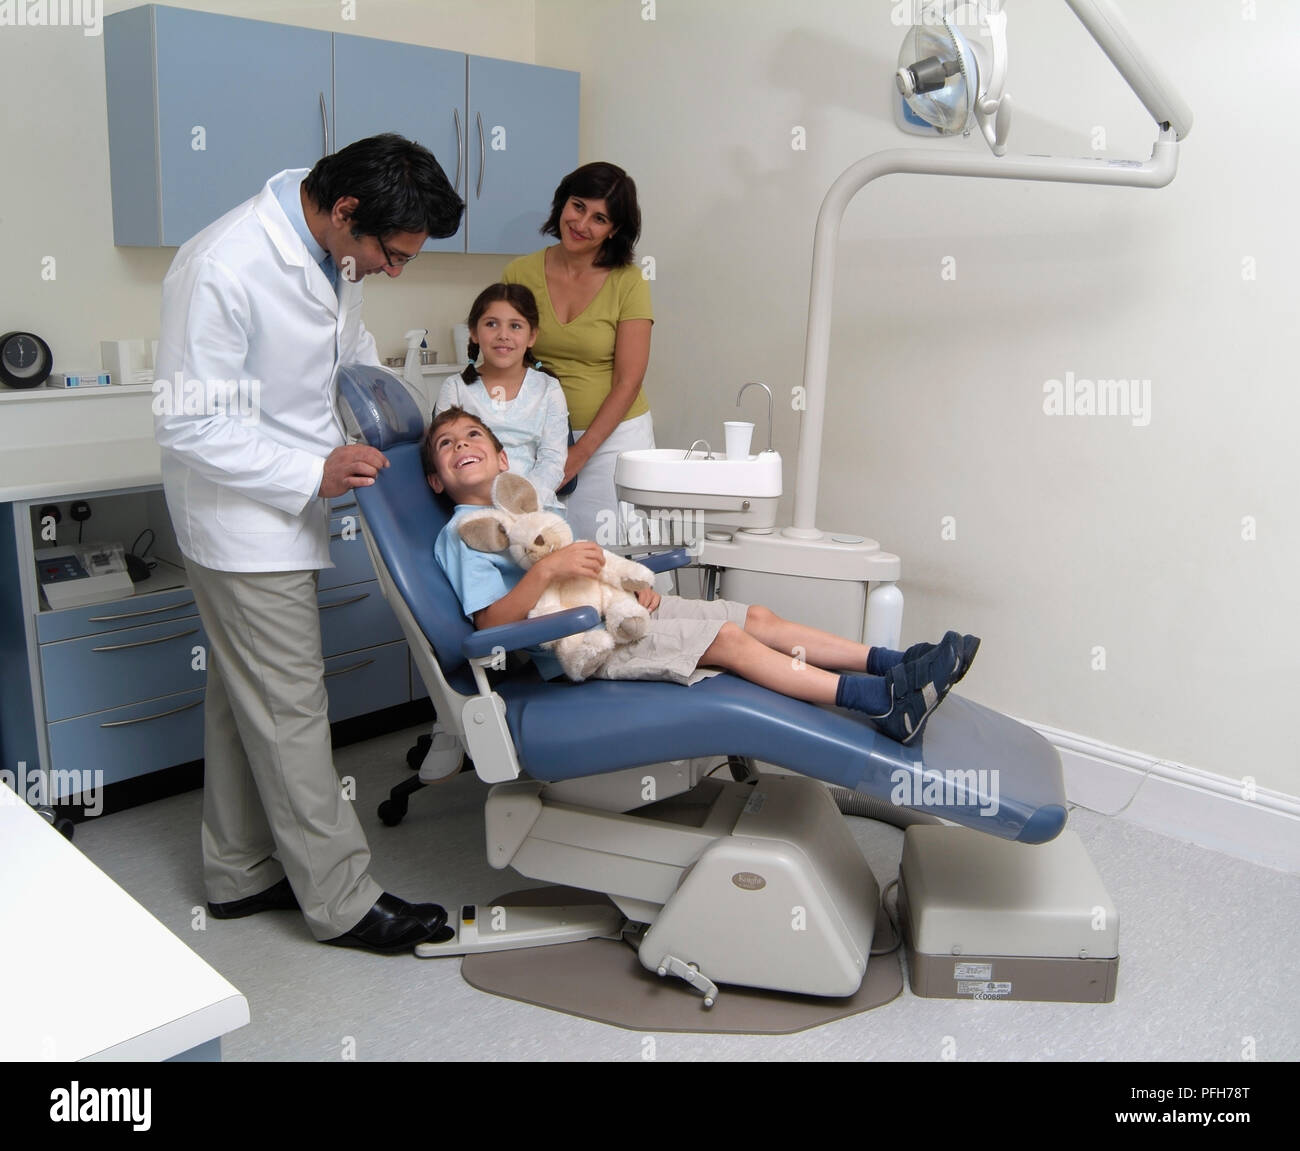 Junge in den Zahnarztstuhl zu Zahnarzt, Frau und Mädchen im Hintergrund Stockfoto